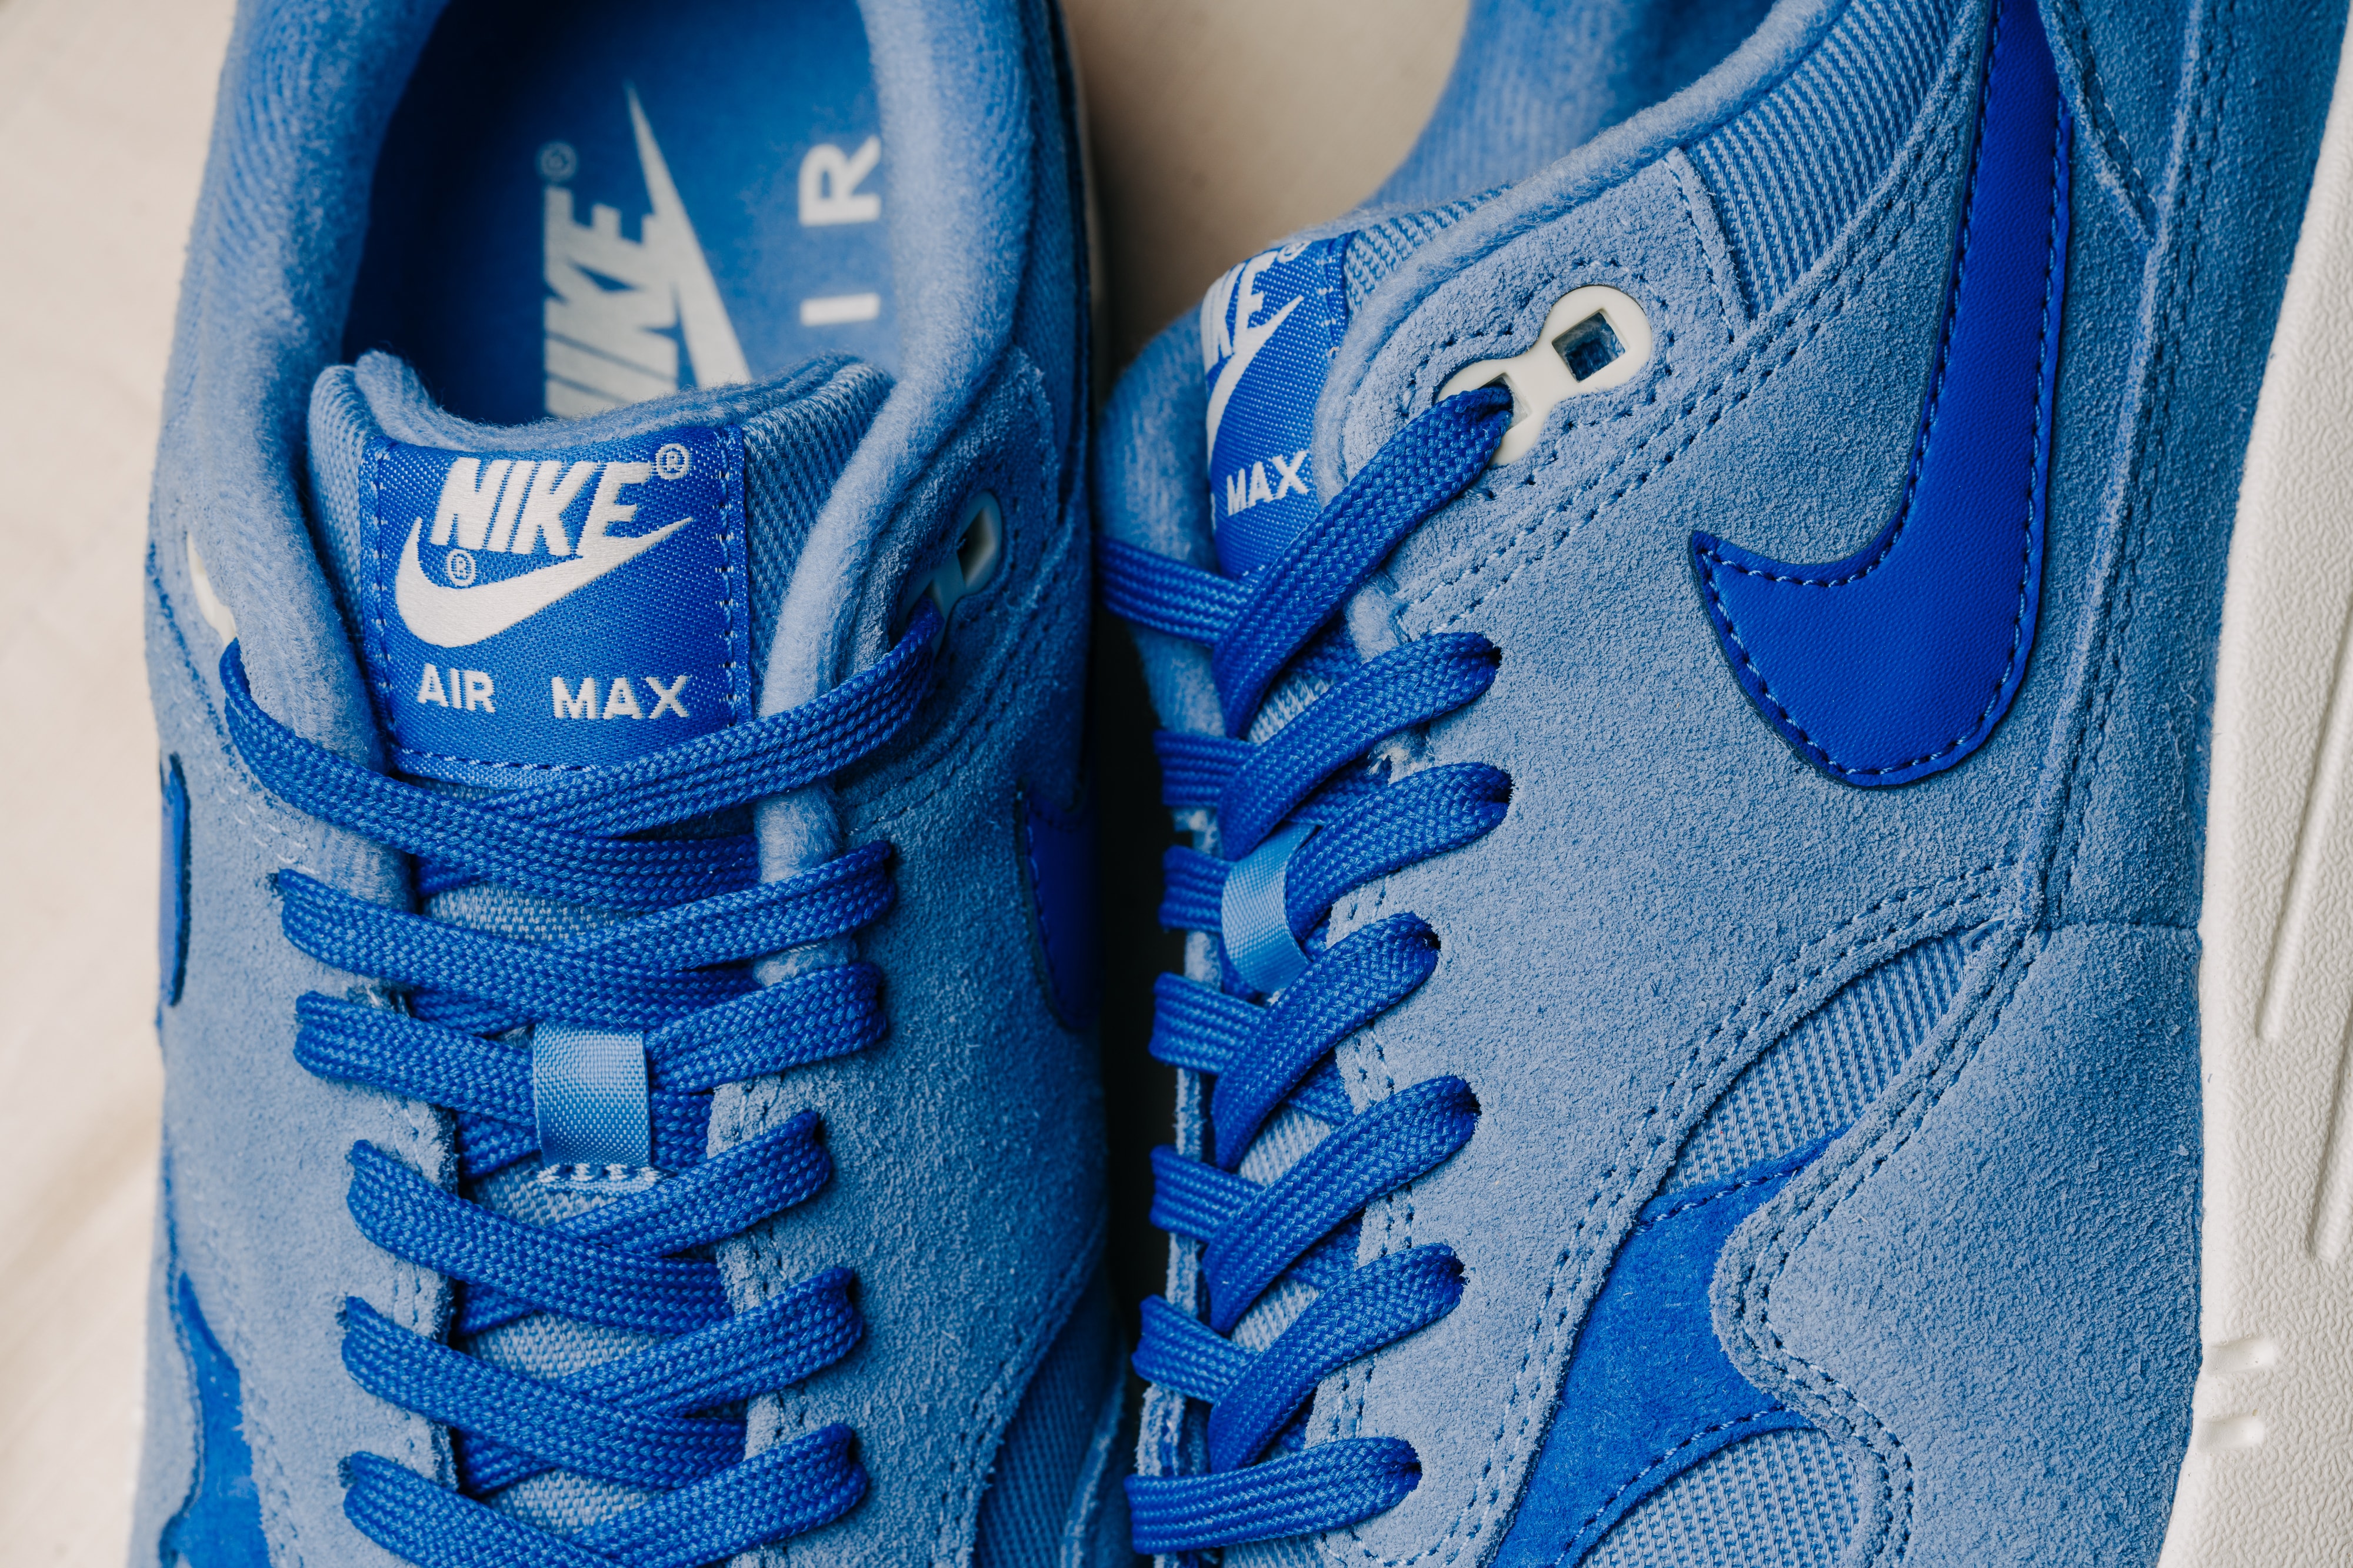 Nike Air Max 1 Premium "Work Blue"